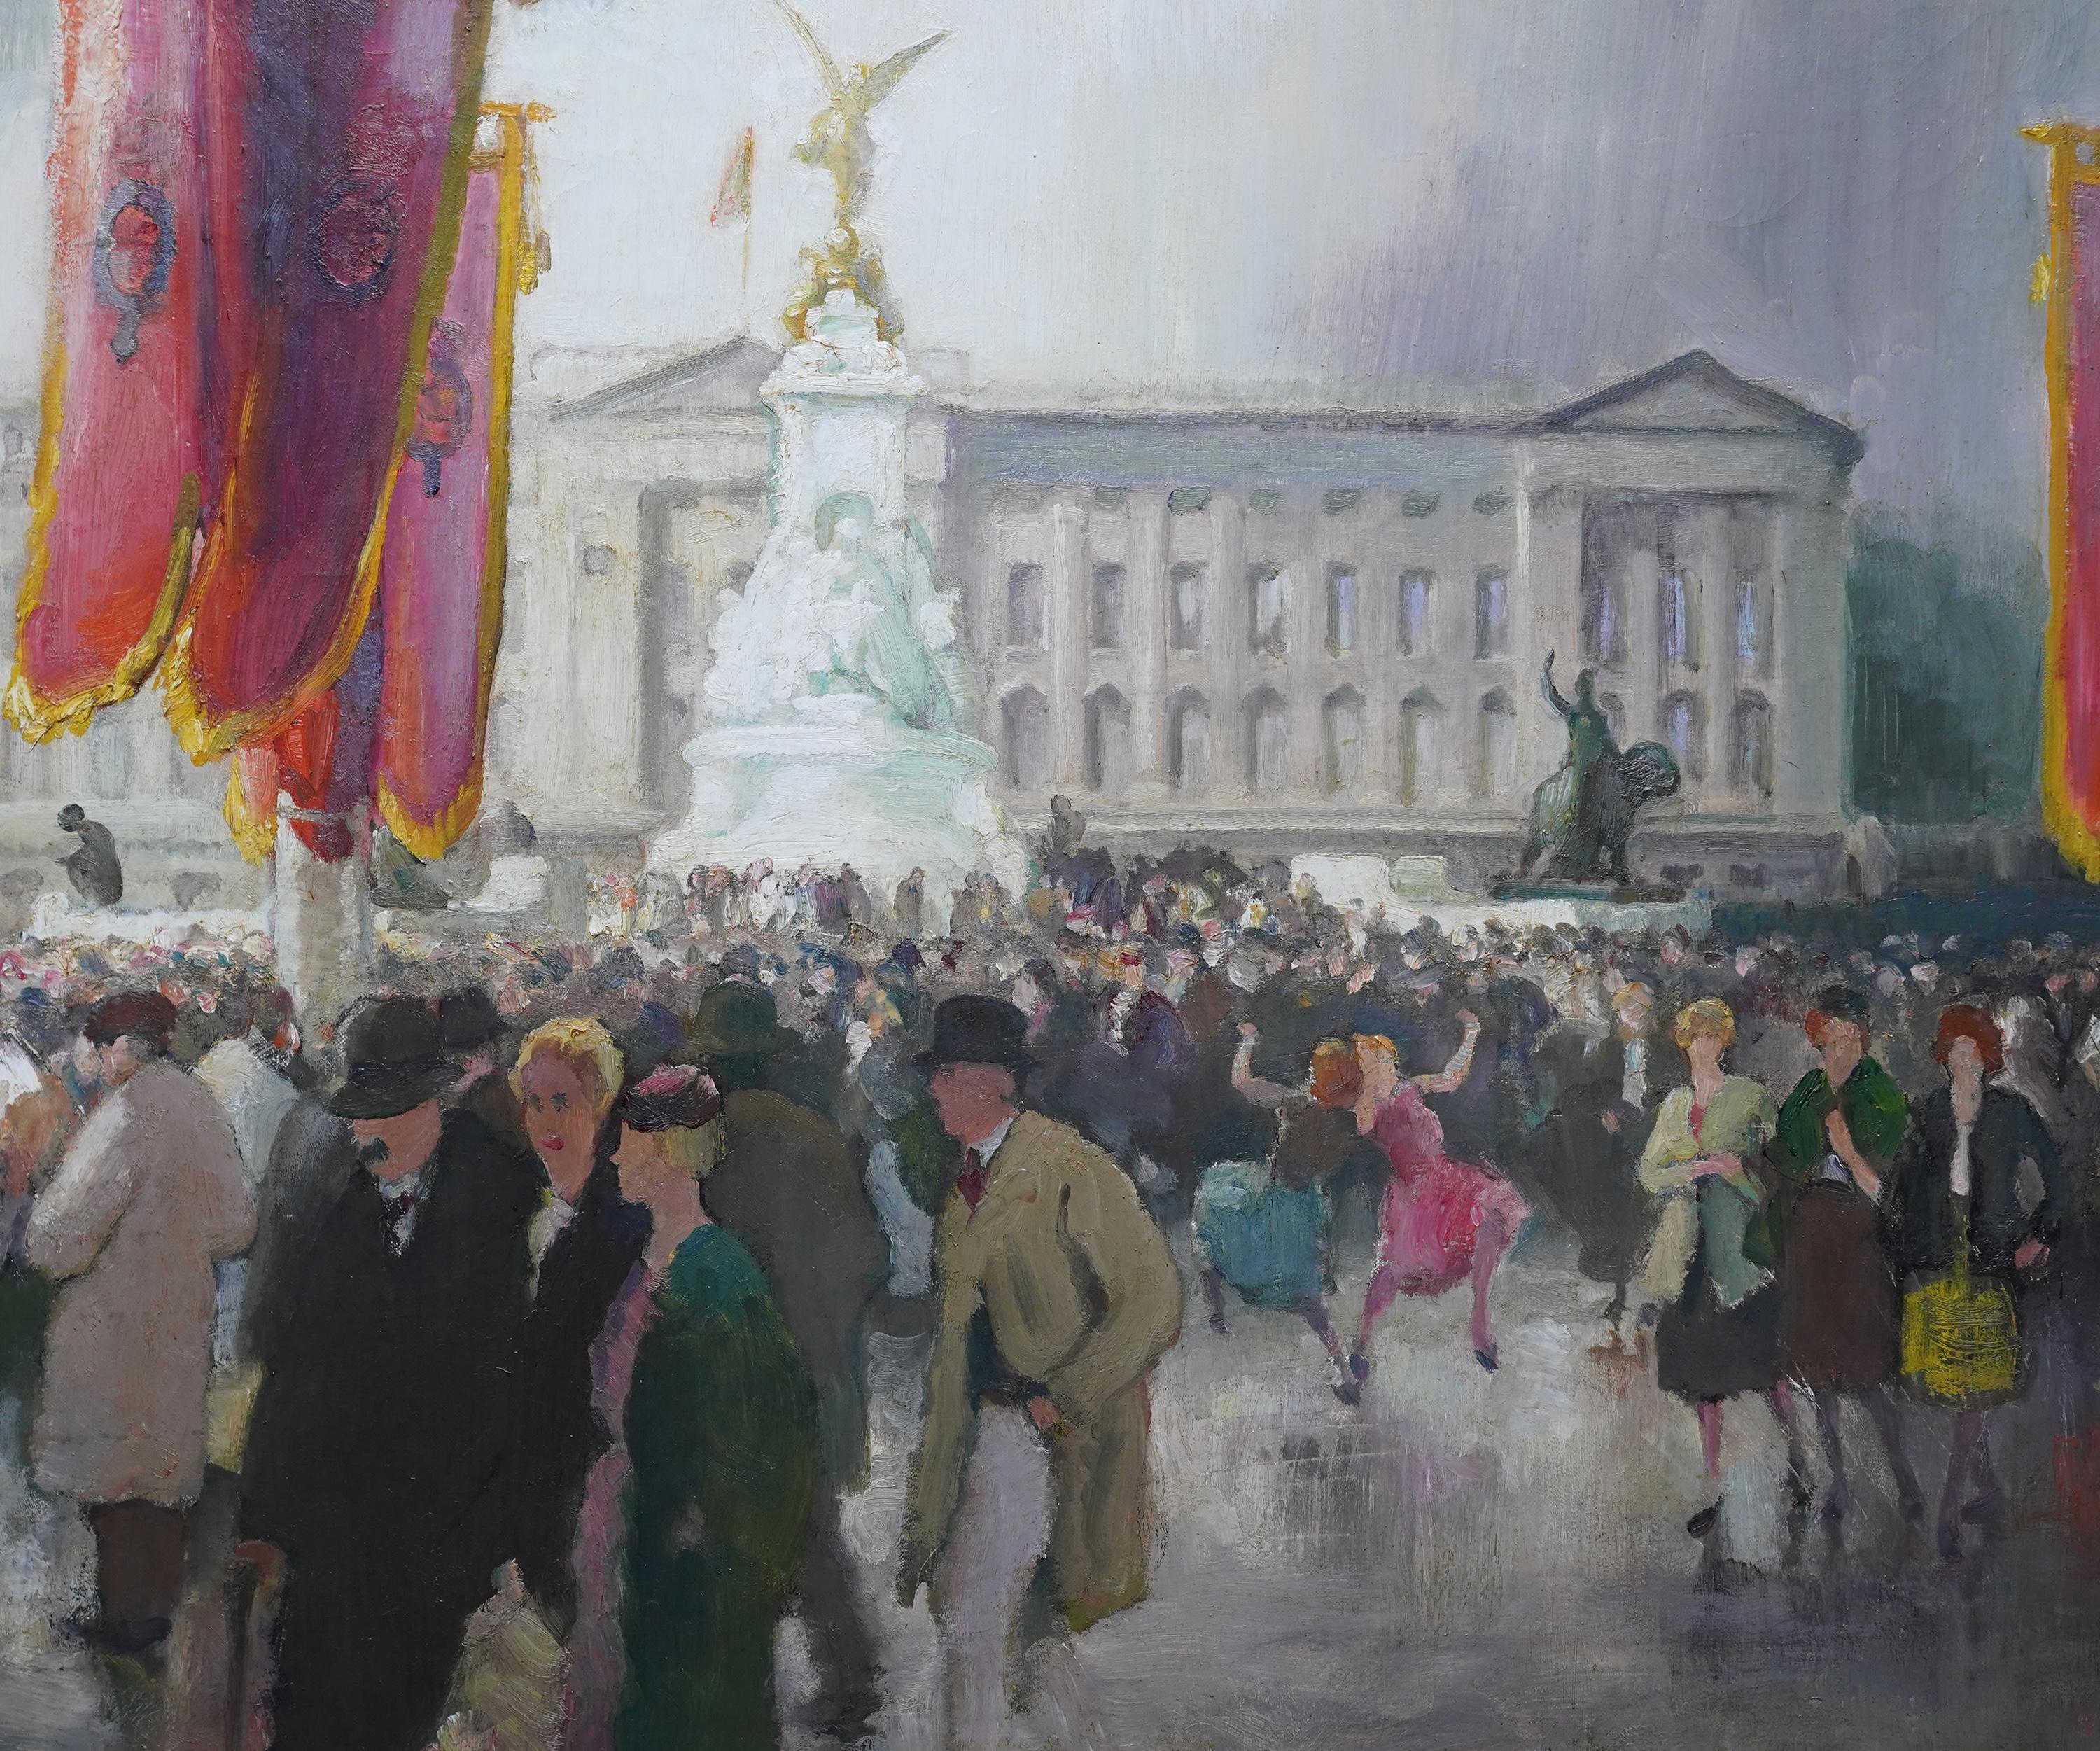 Festivities Buckingham Palace – britisches figuratives Landschaftsgemälde aus den 1950er Jahren (Post-Impressionismus), Painting, von Spencer Pryse